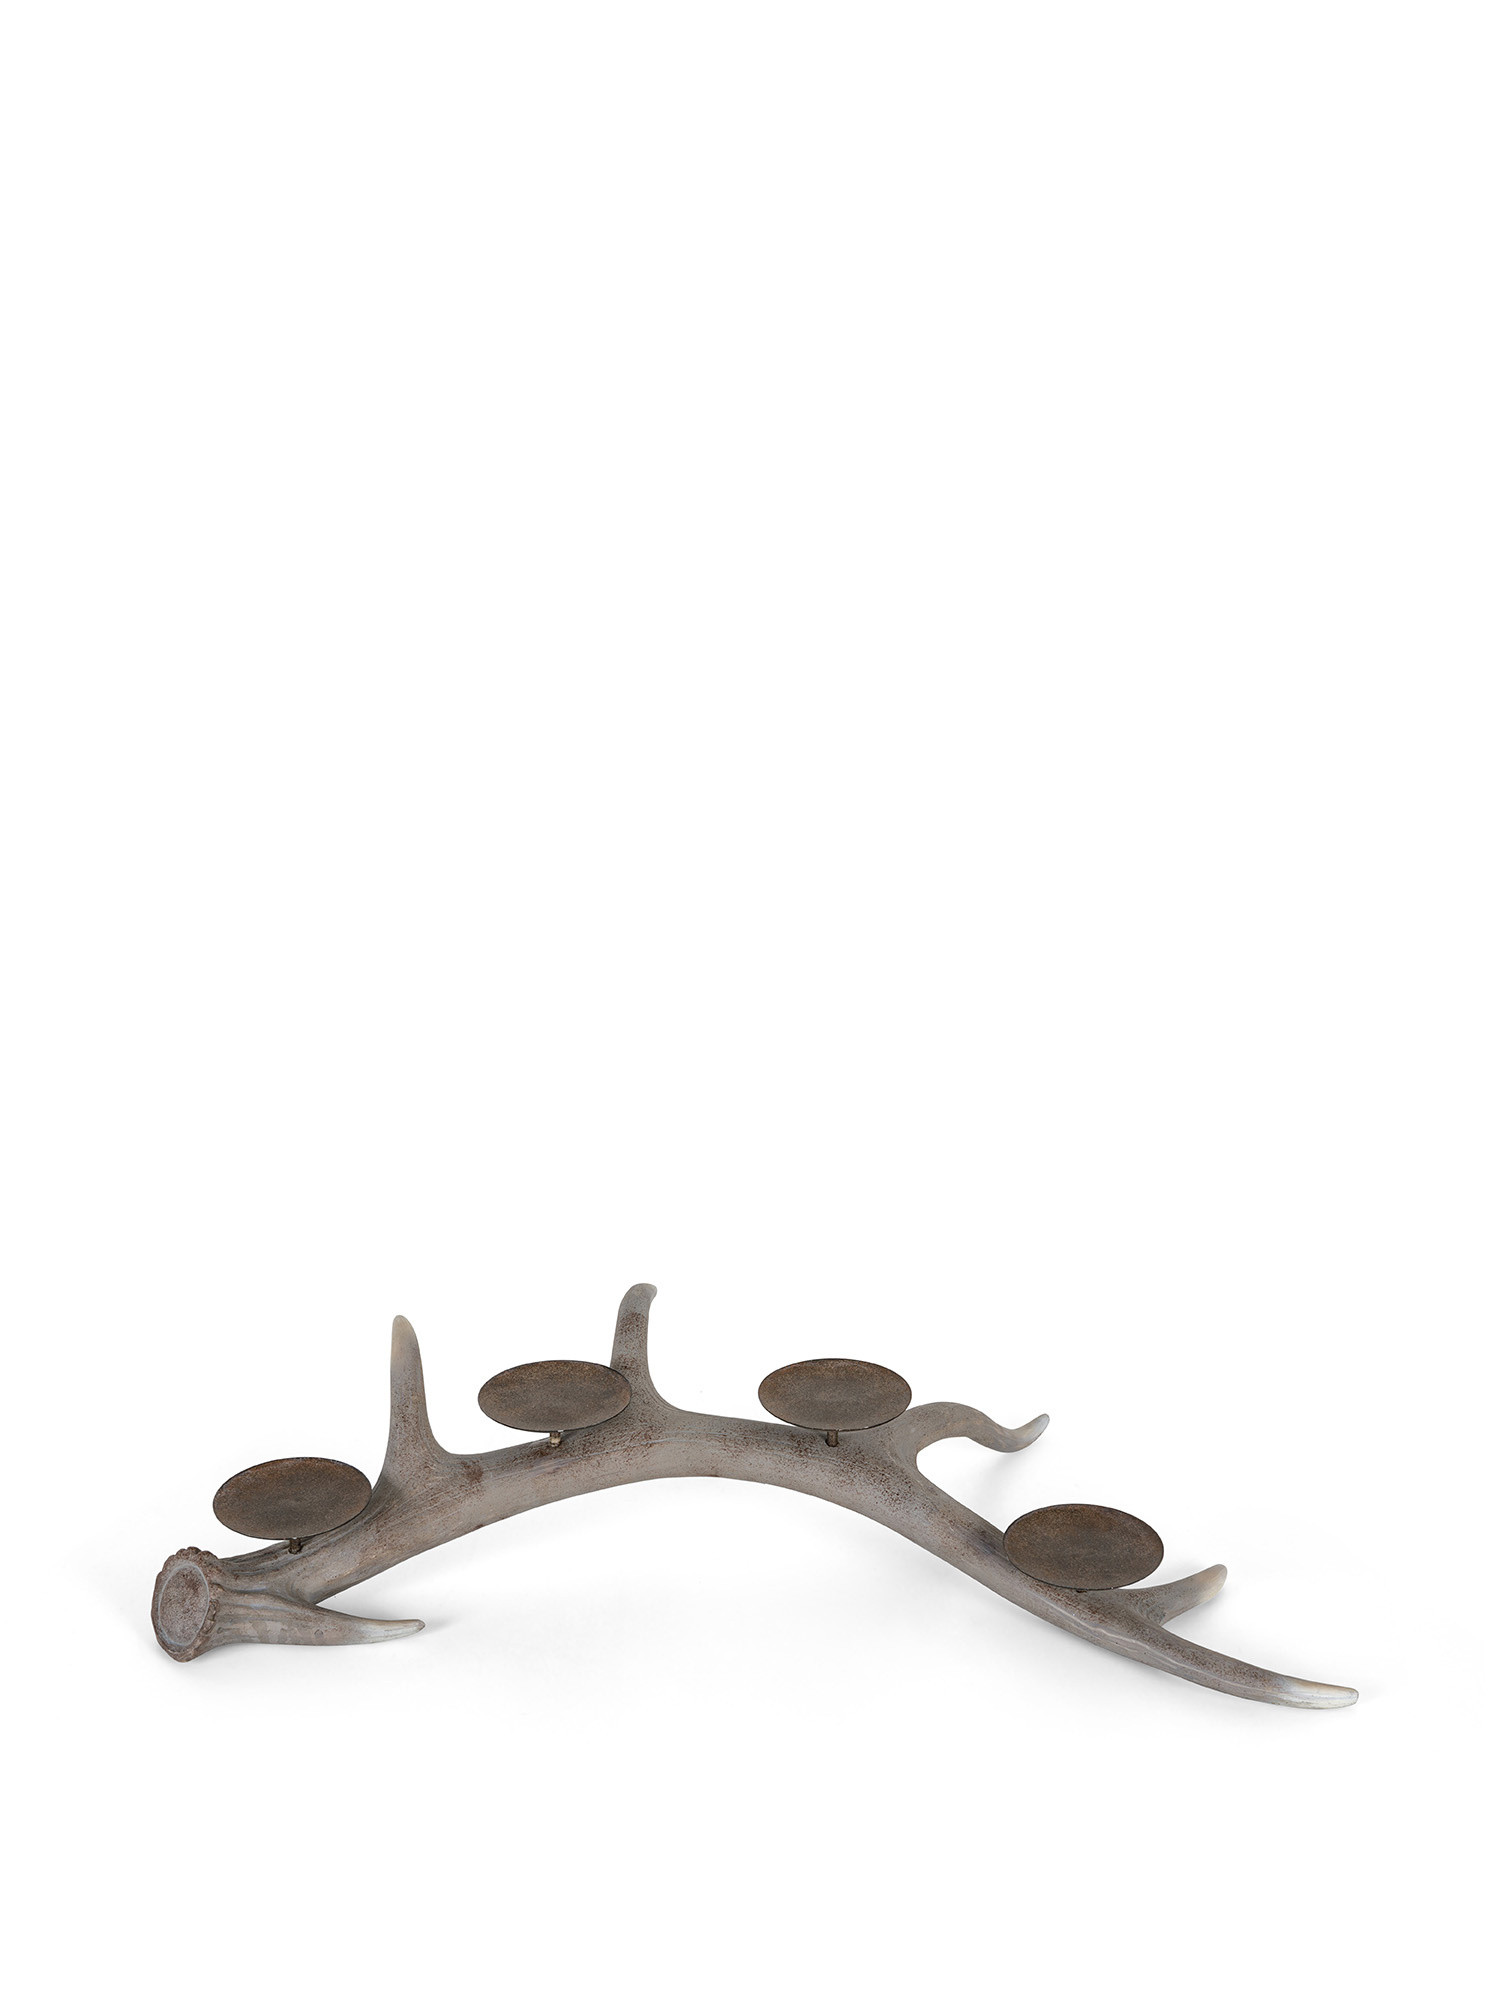 Candeliere a forma di corno con 4 portacandele in metallo, Grigio, large image number 0